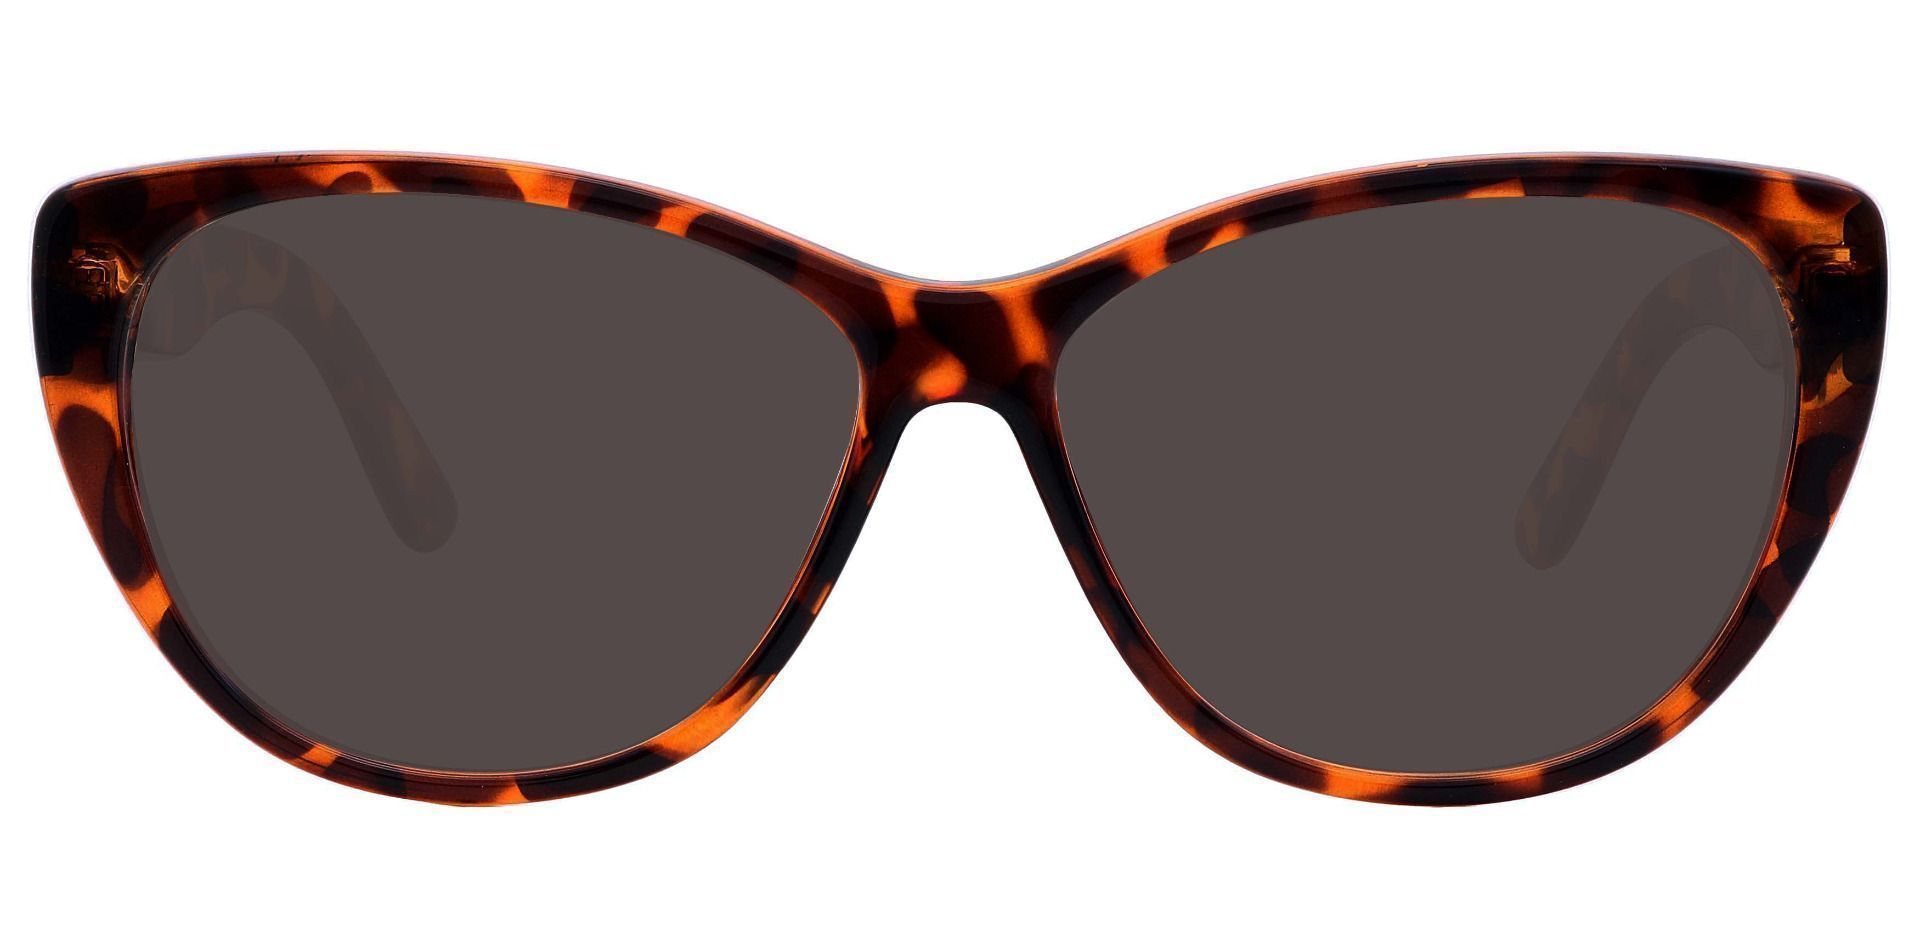 Lynn Cat-Eye Non-Rx Sunglasses - Tortoise Frame With Gray Lenses